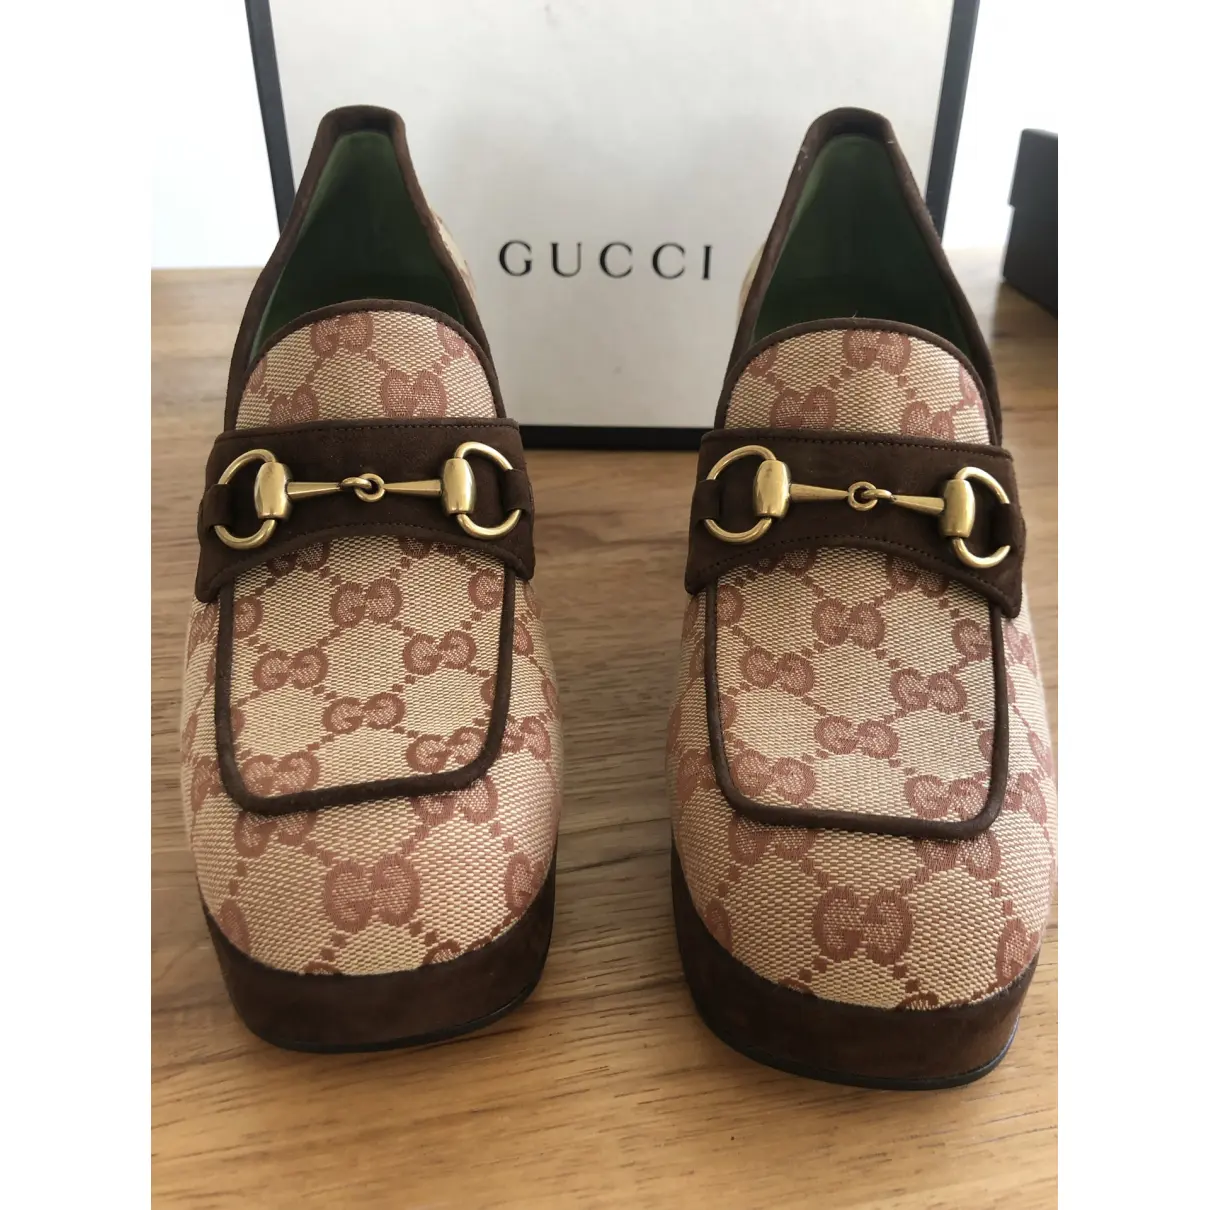 Buy Gucci Heels online